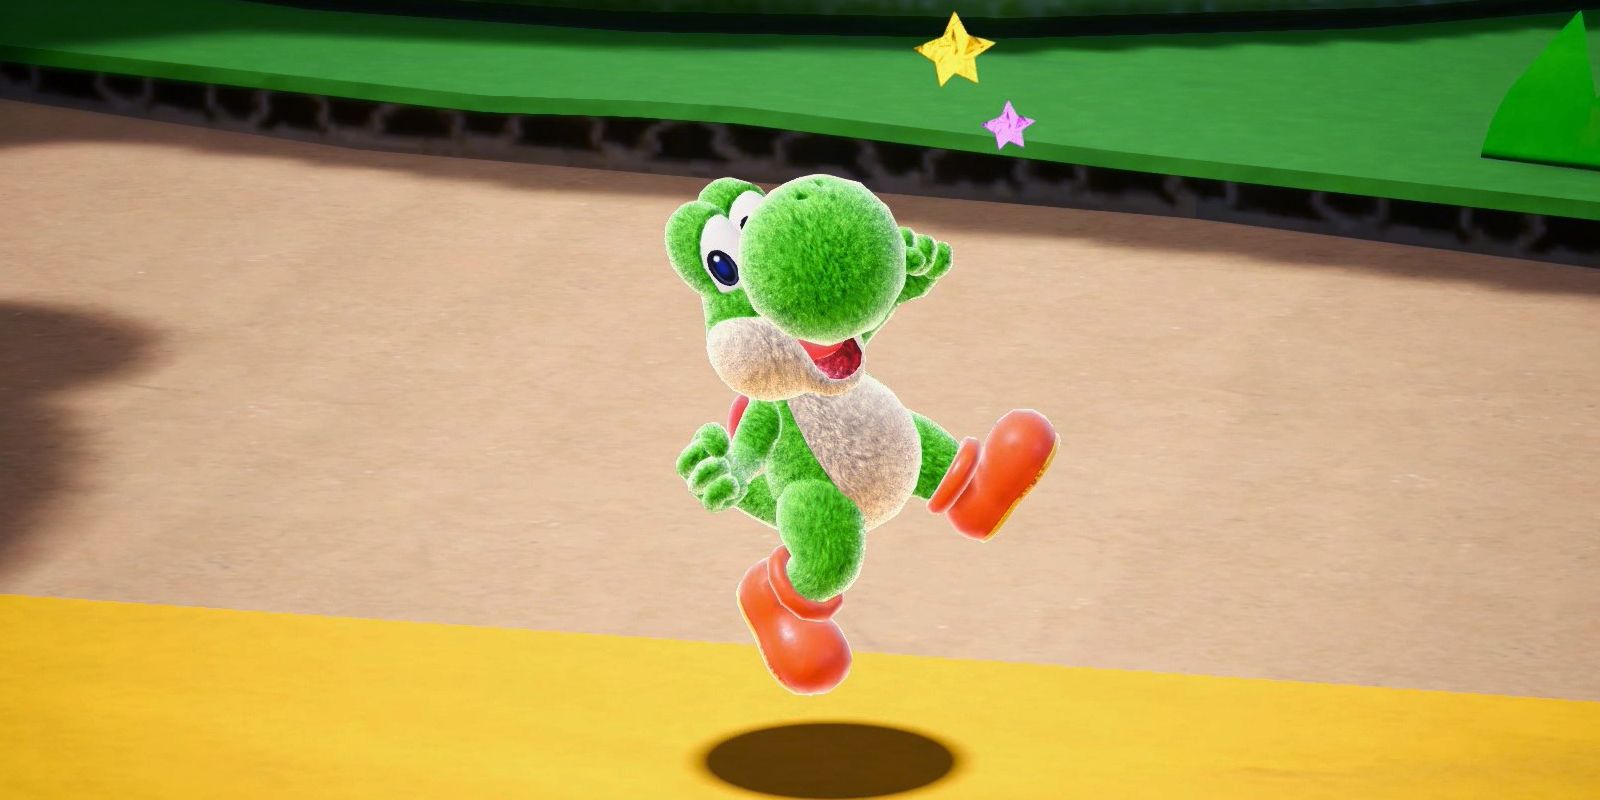 Yoshi jumps joyously with stars above